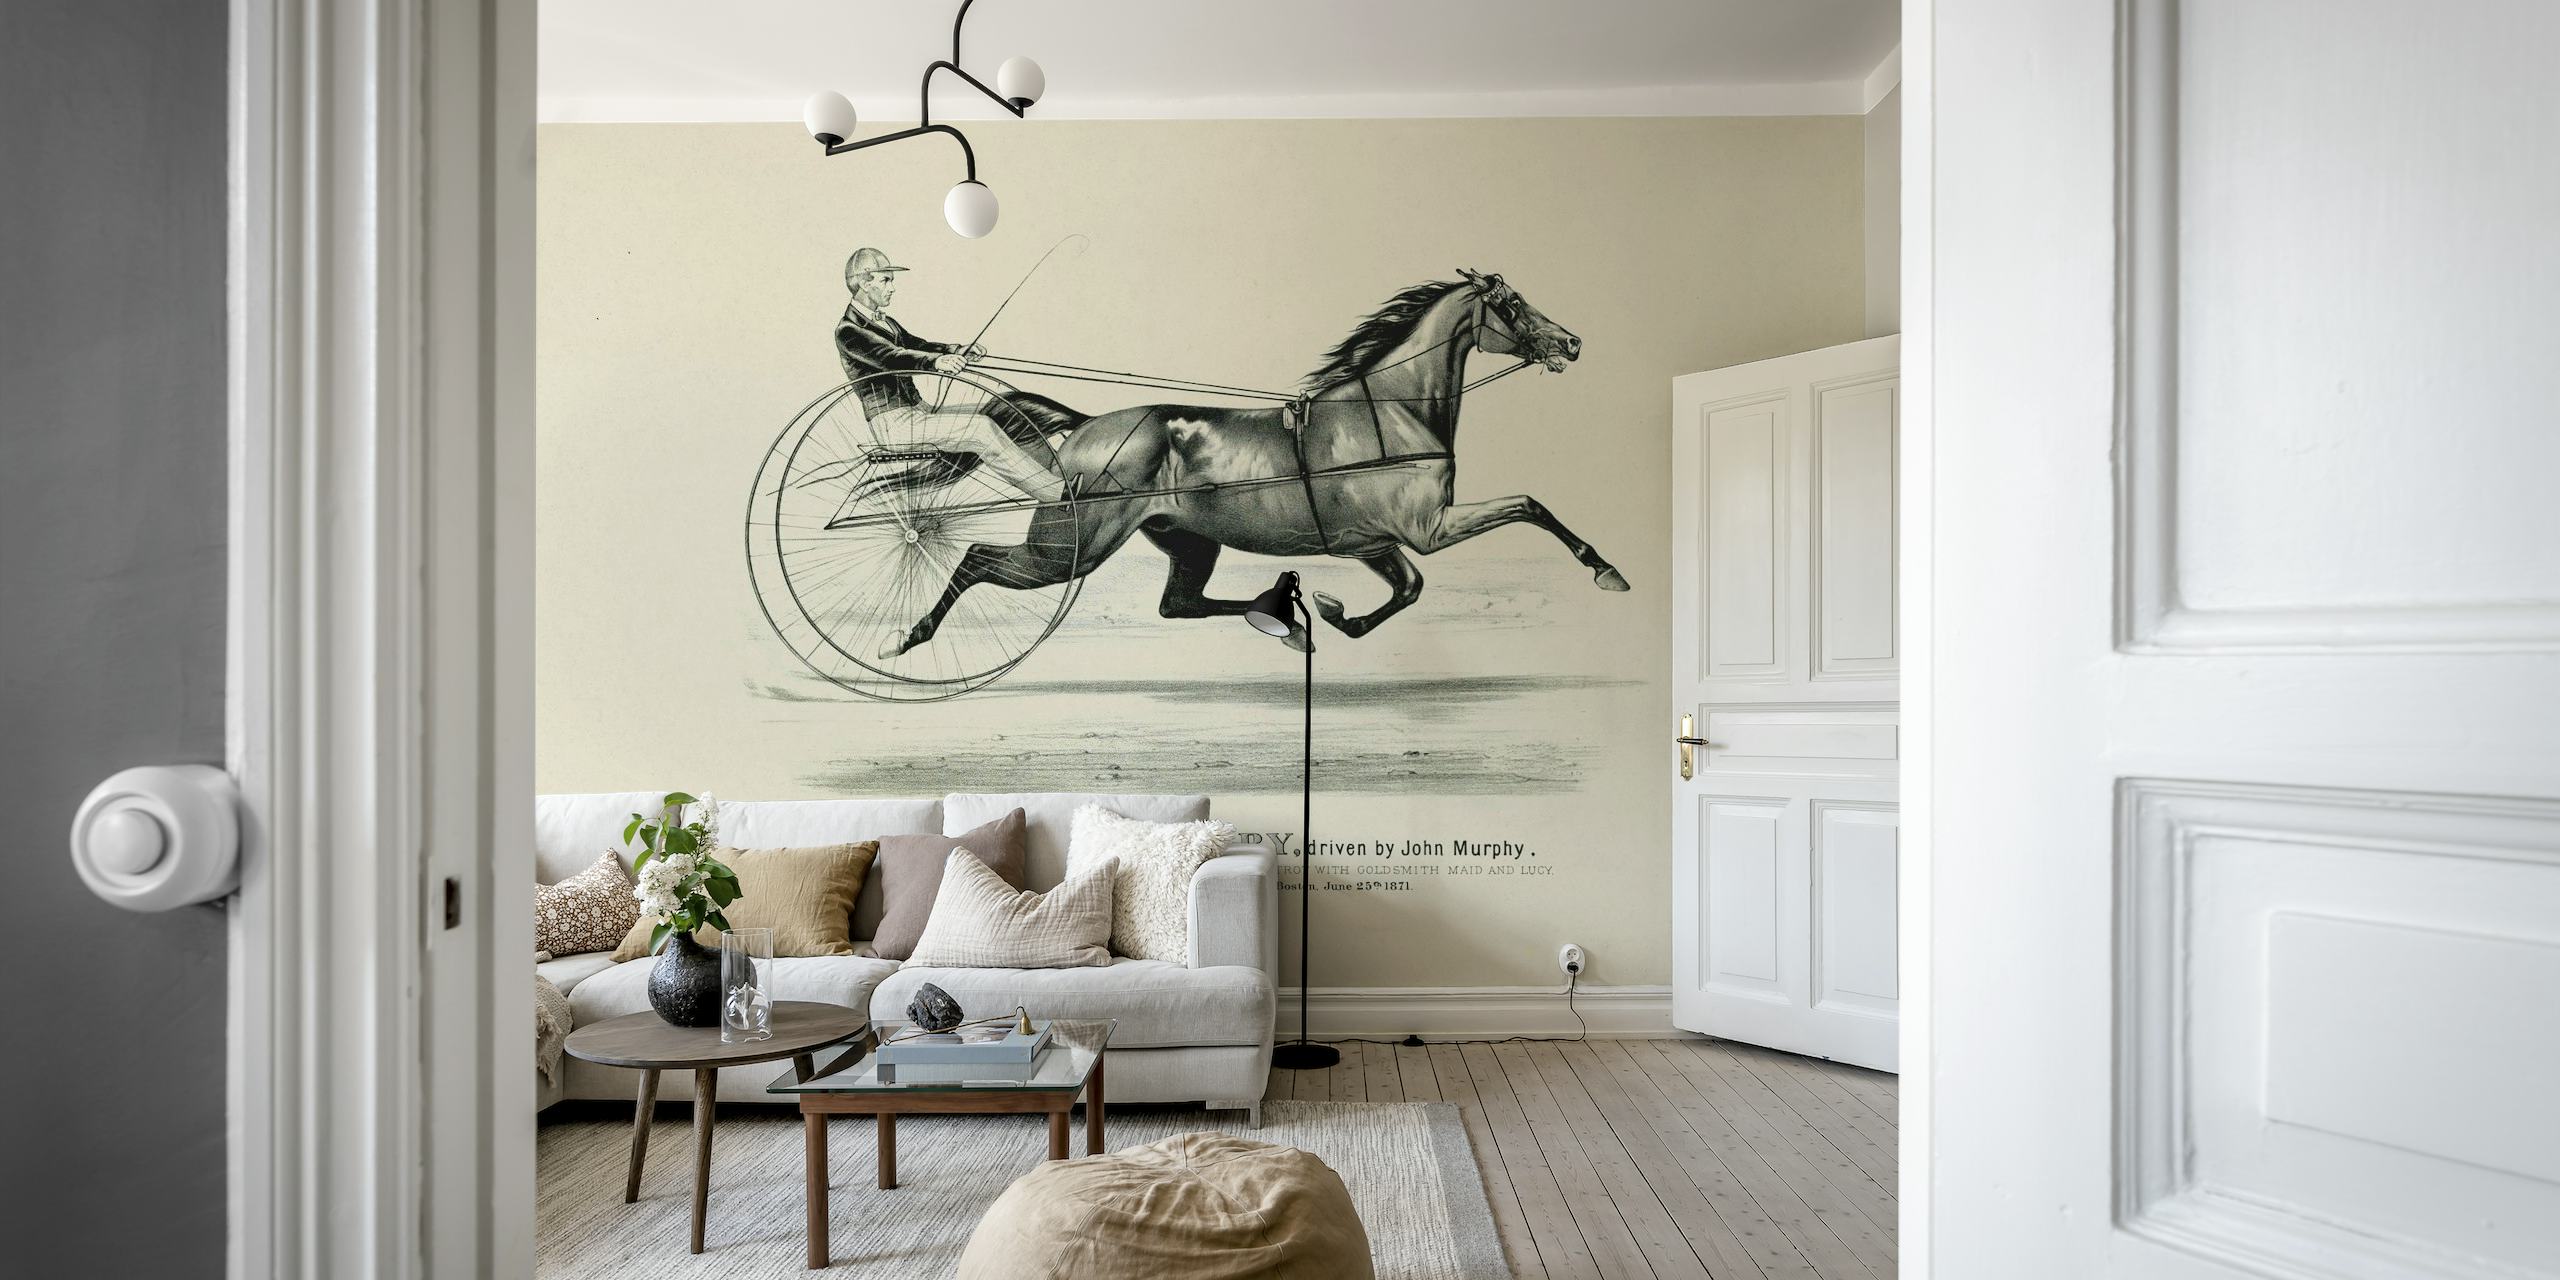 Fotomural vinílico histórico de arte de equitação representando um cavalo e um cavaleiro em estilo clássico.